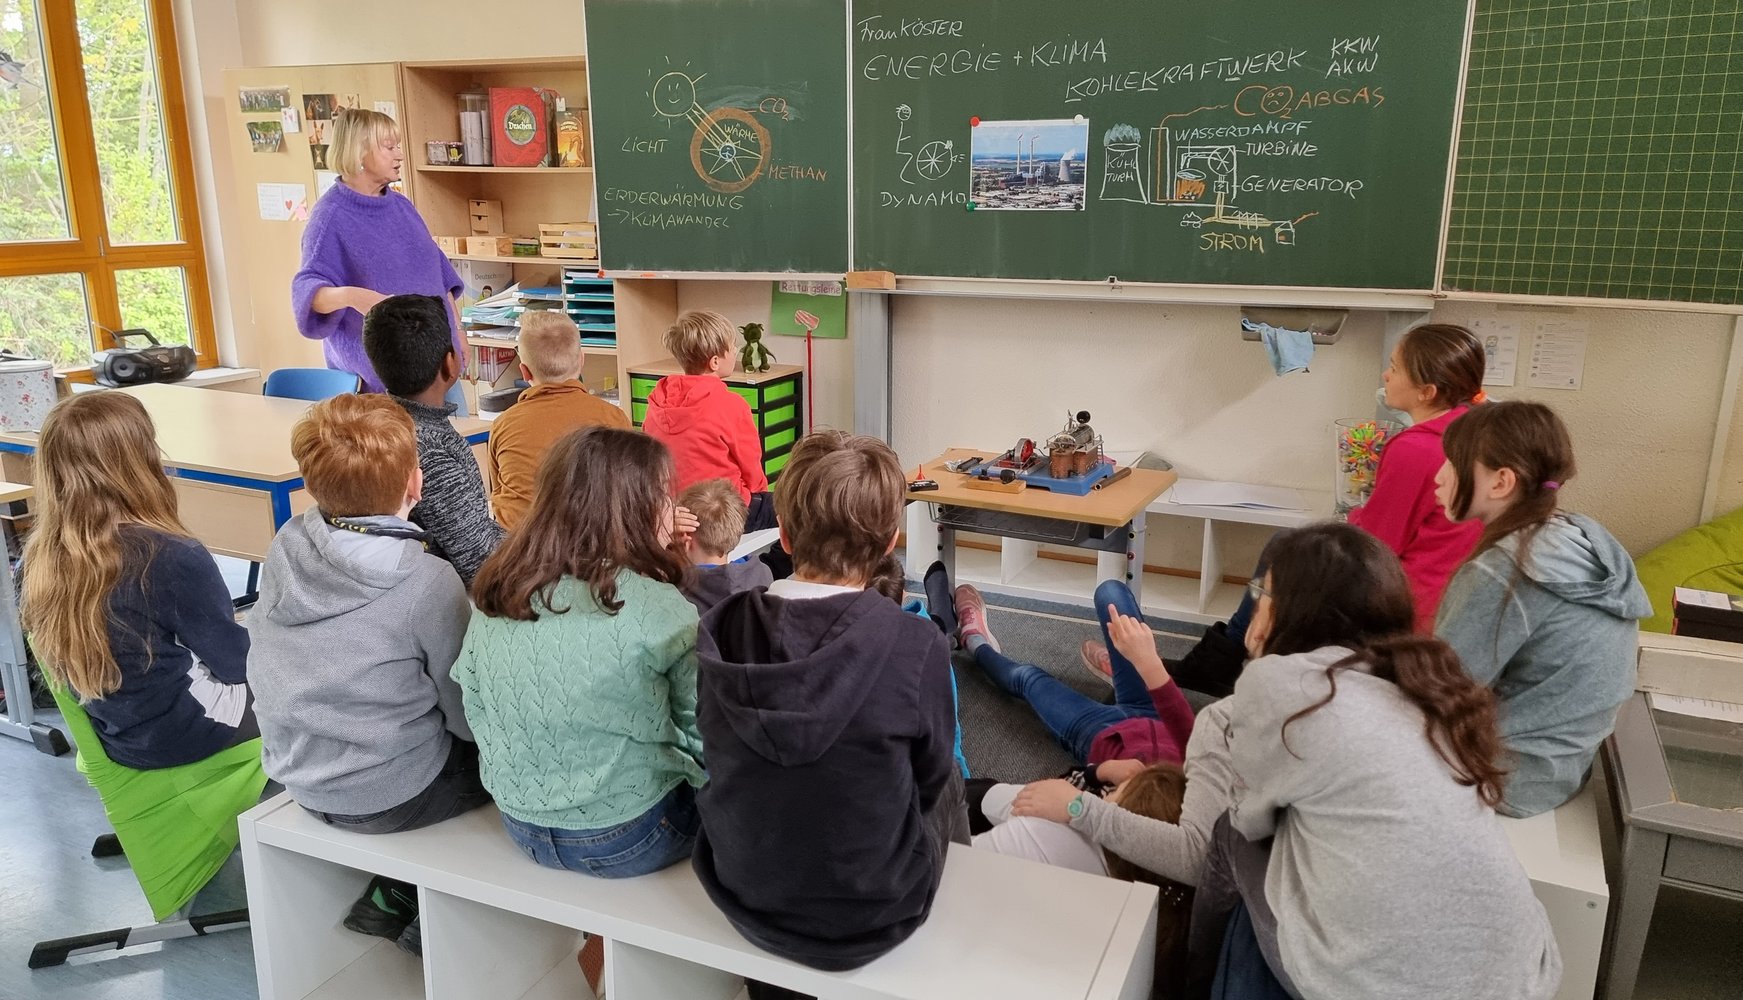 Energiesparunterricht an Schulen durch die Stadtwerke Ratingen organisiert.